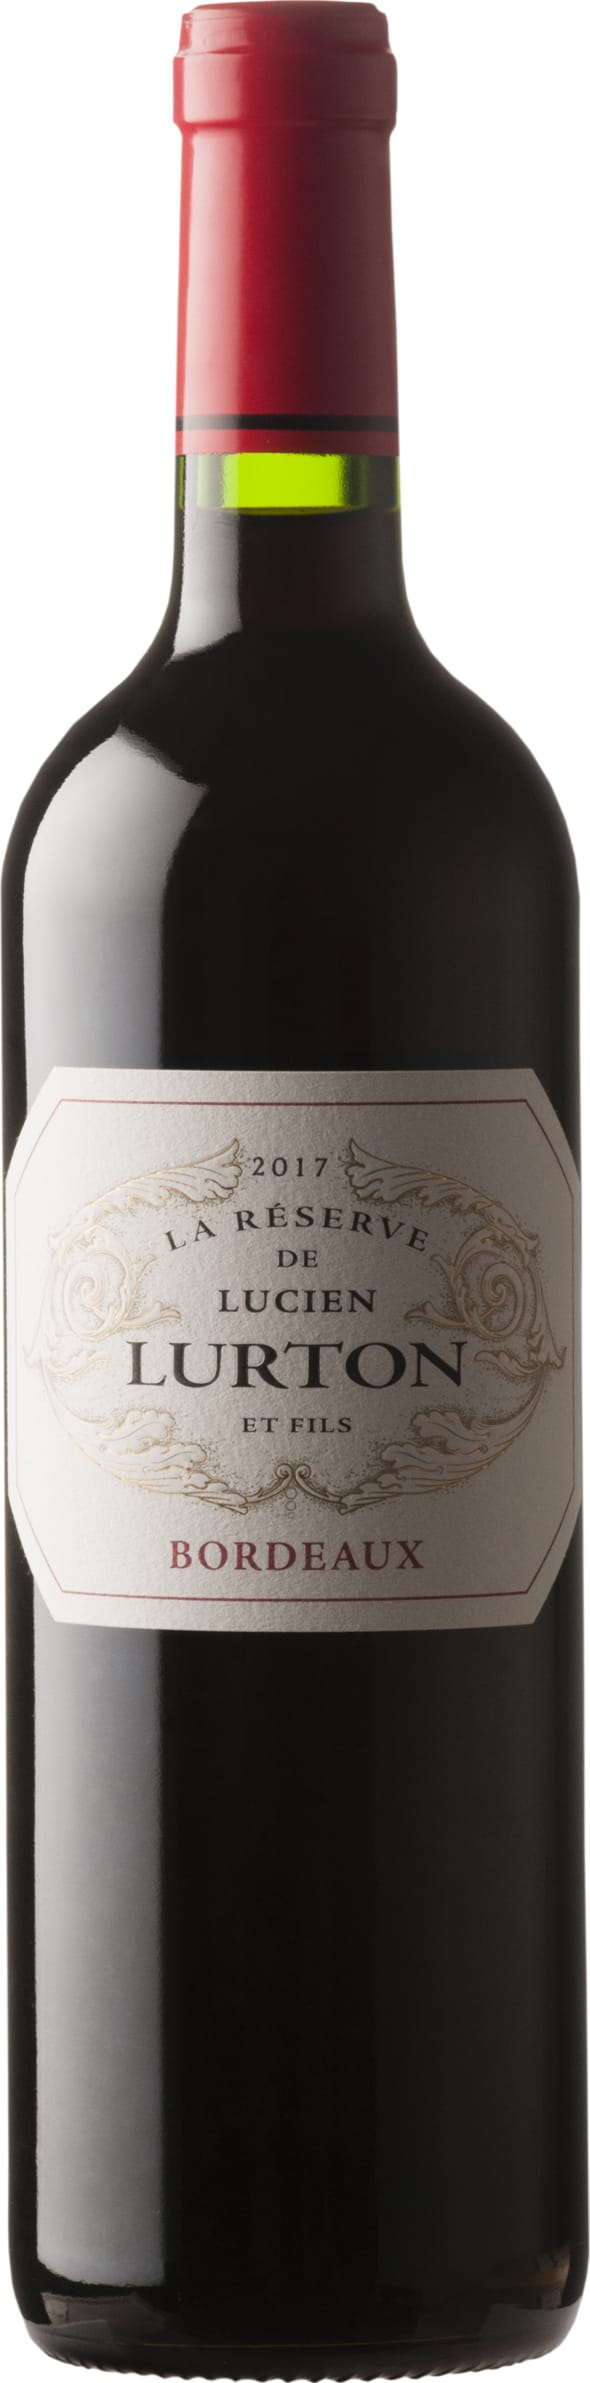 Lucien Lurton Collection Bordeaux Rouge La Reserve 2020 75cl - Buy Lucien Lurton Collection Wines from GREAT WINES DIRECT wine shop